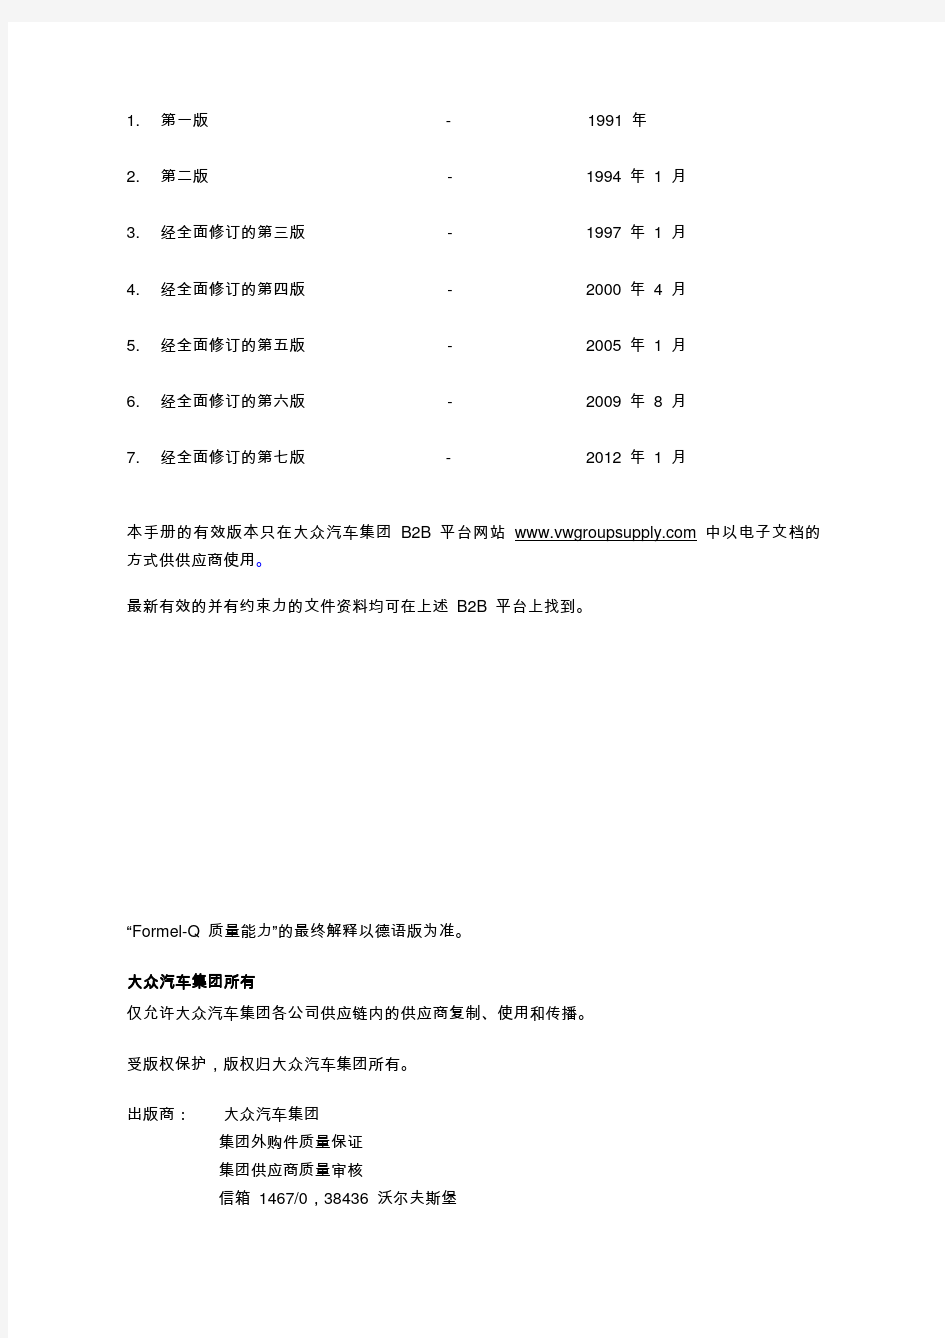 大众特殊要求：第7版 Formel-Q(中文) 2012.1